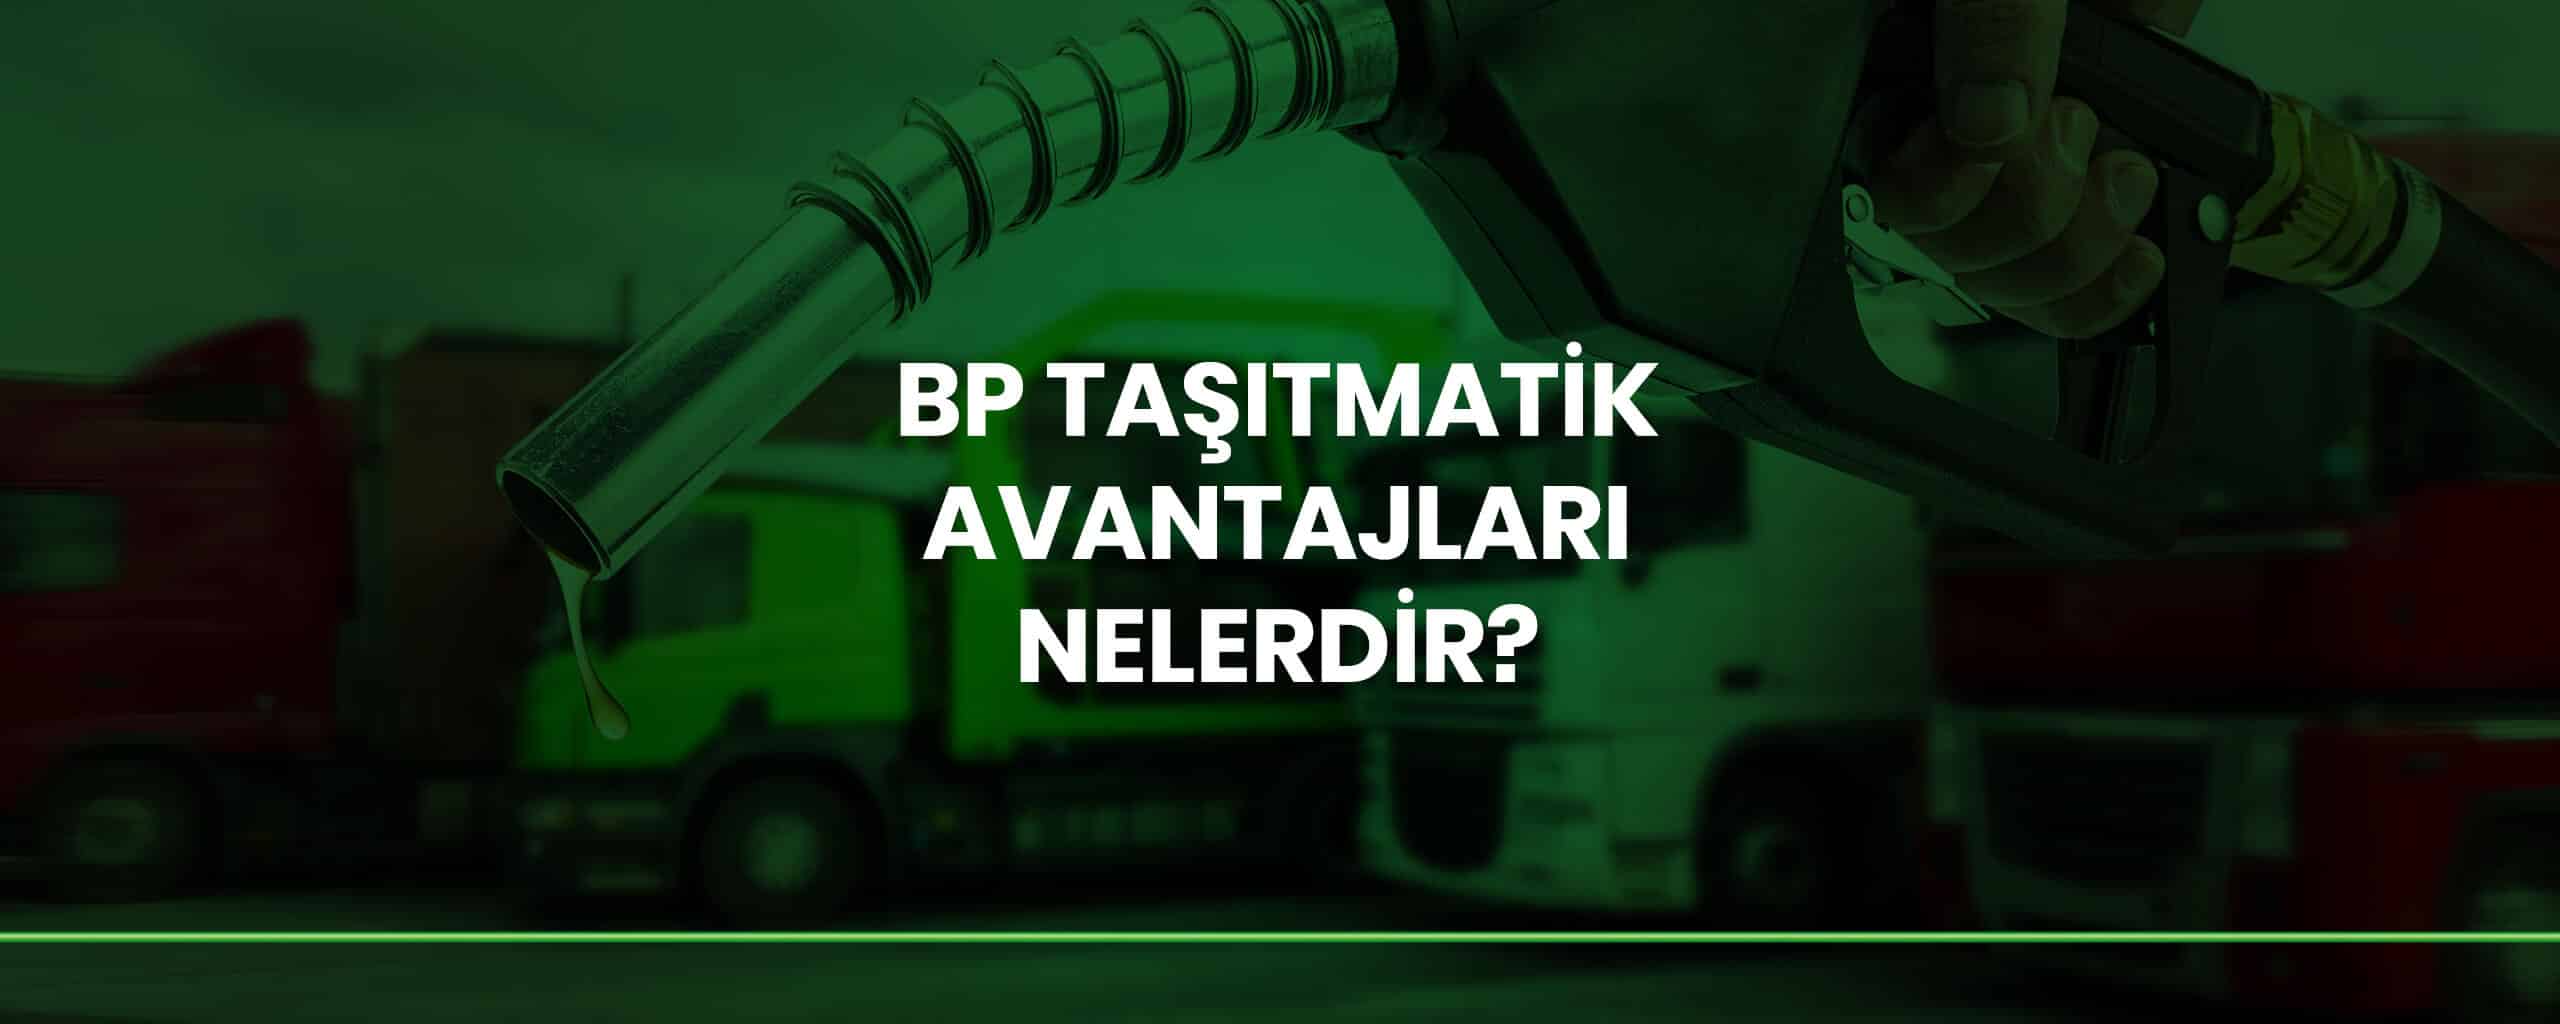 BP Taşıtmatik Avantajları Nelerdir?